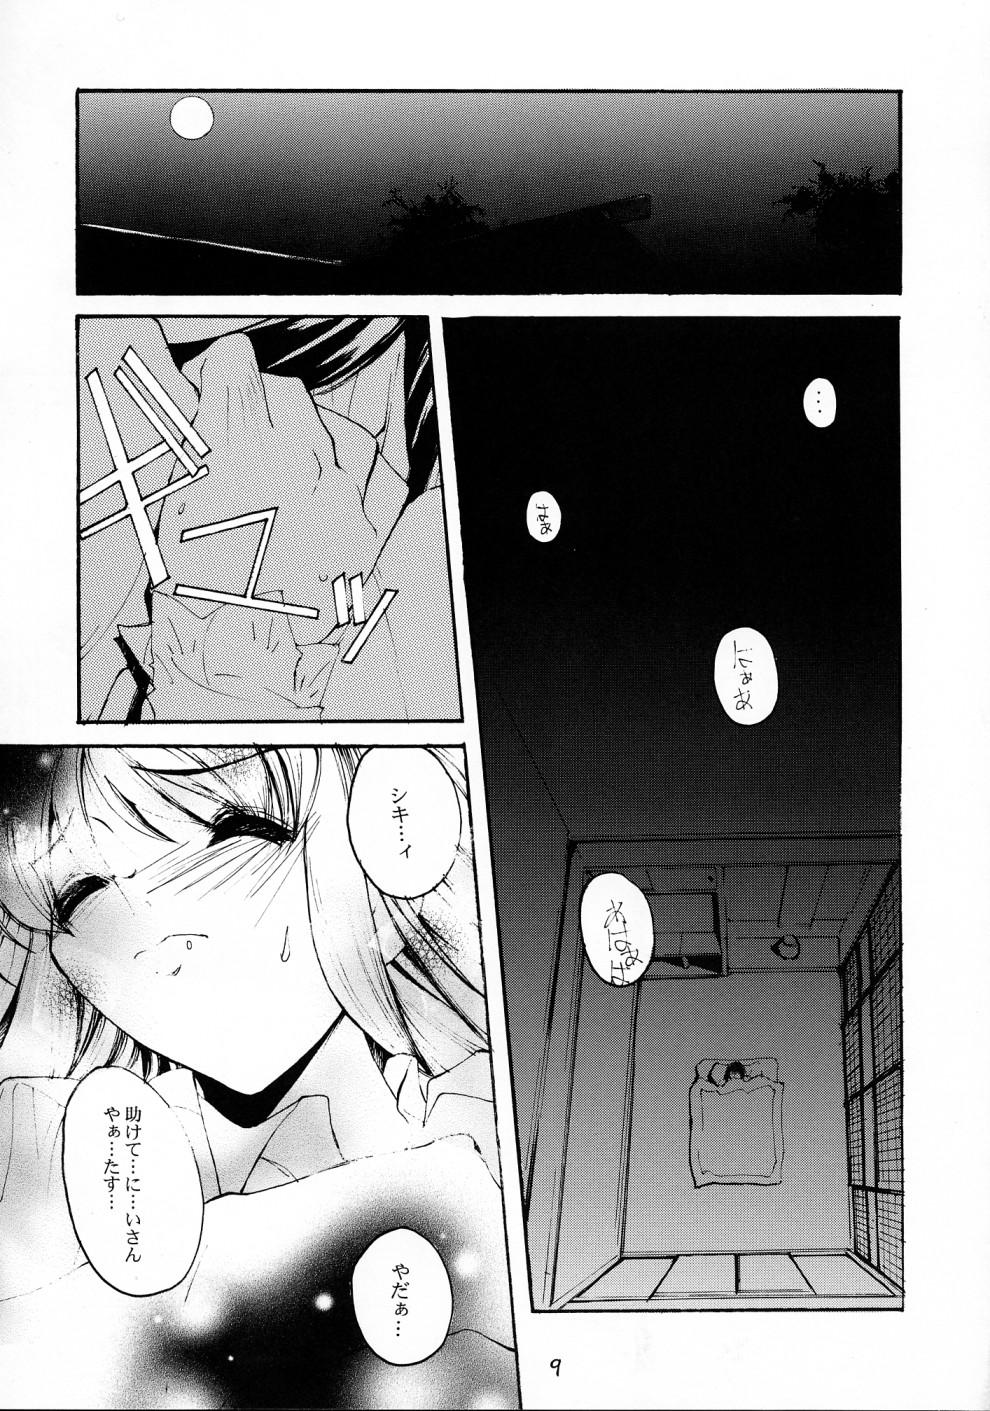 Lesbos Gekka Shoujo 2 - Tsukihime Gaping - Page 8